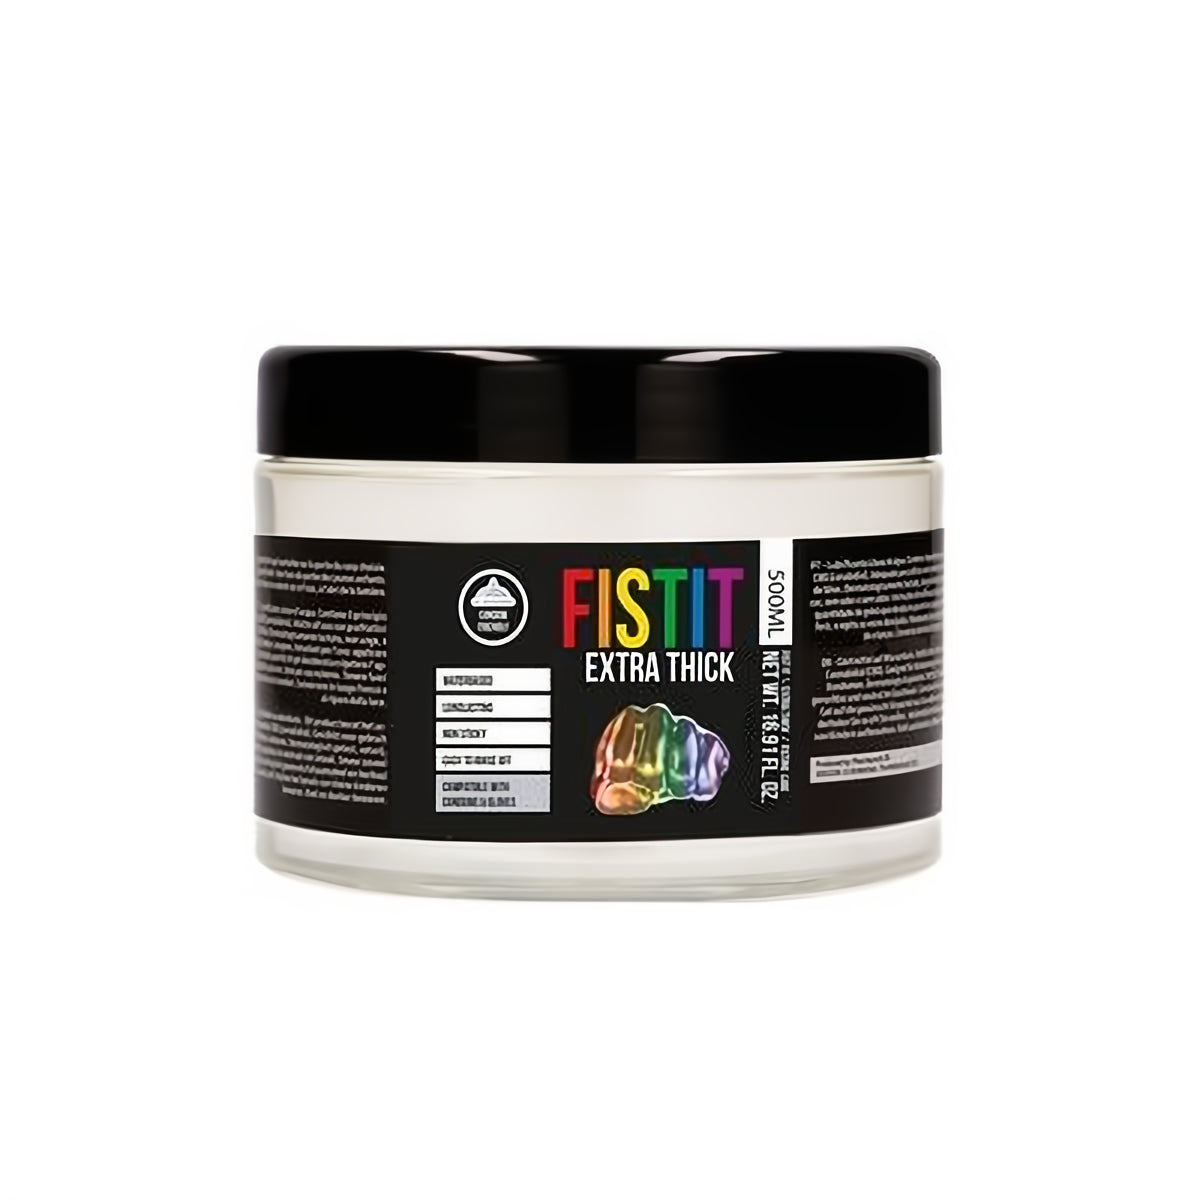 Extra Thick Lubricant Rainbow Edition - 500 ml - EroticToyzProducten,Veilige Seks, Verzorging Hulp,Glijmiddelen,Fisting Glijmiddelen,,GeslachtsneutraalFist It by Shots